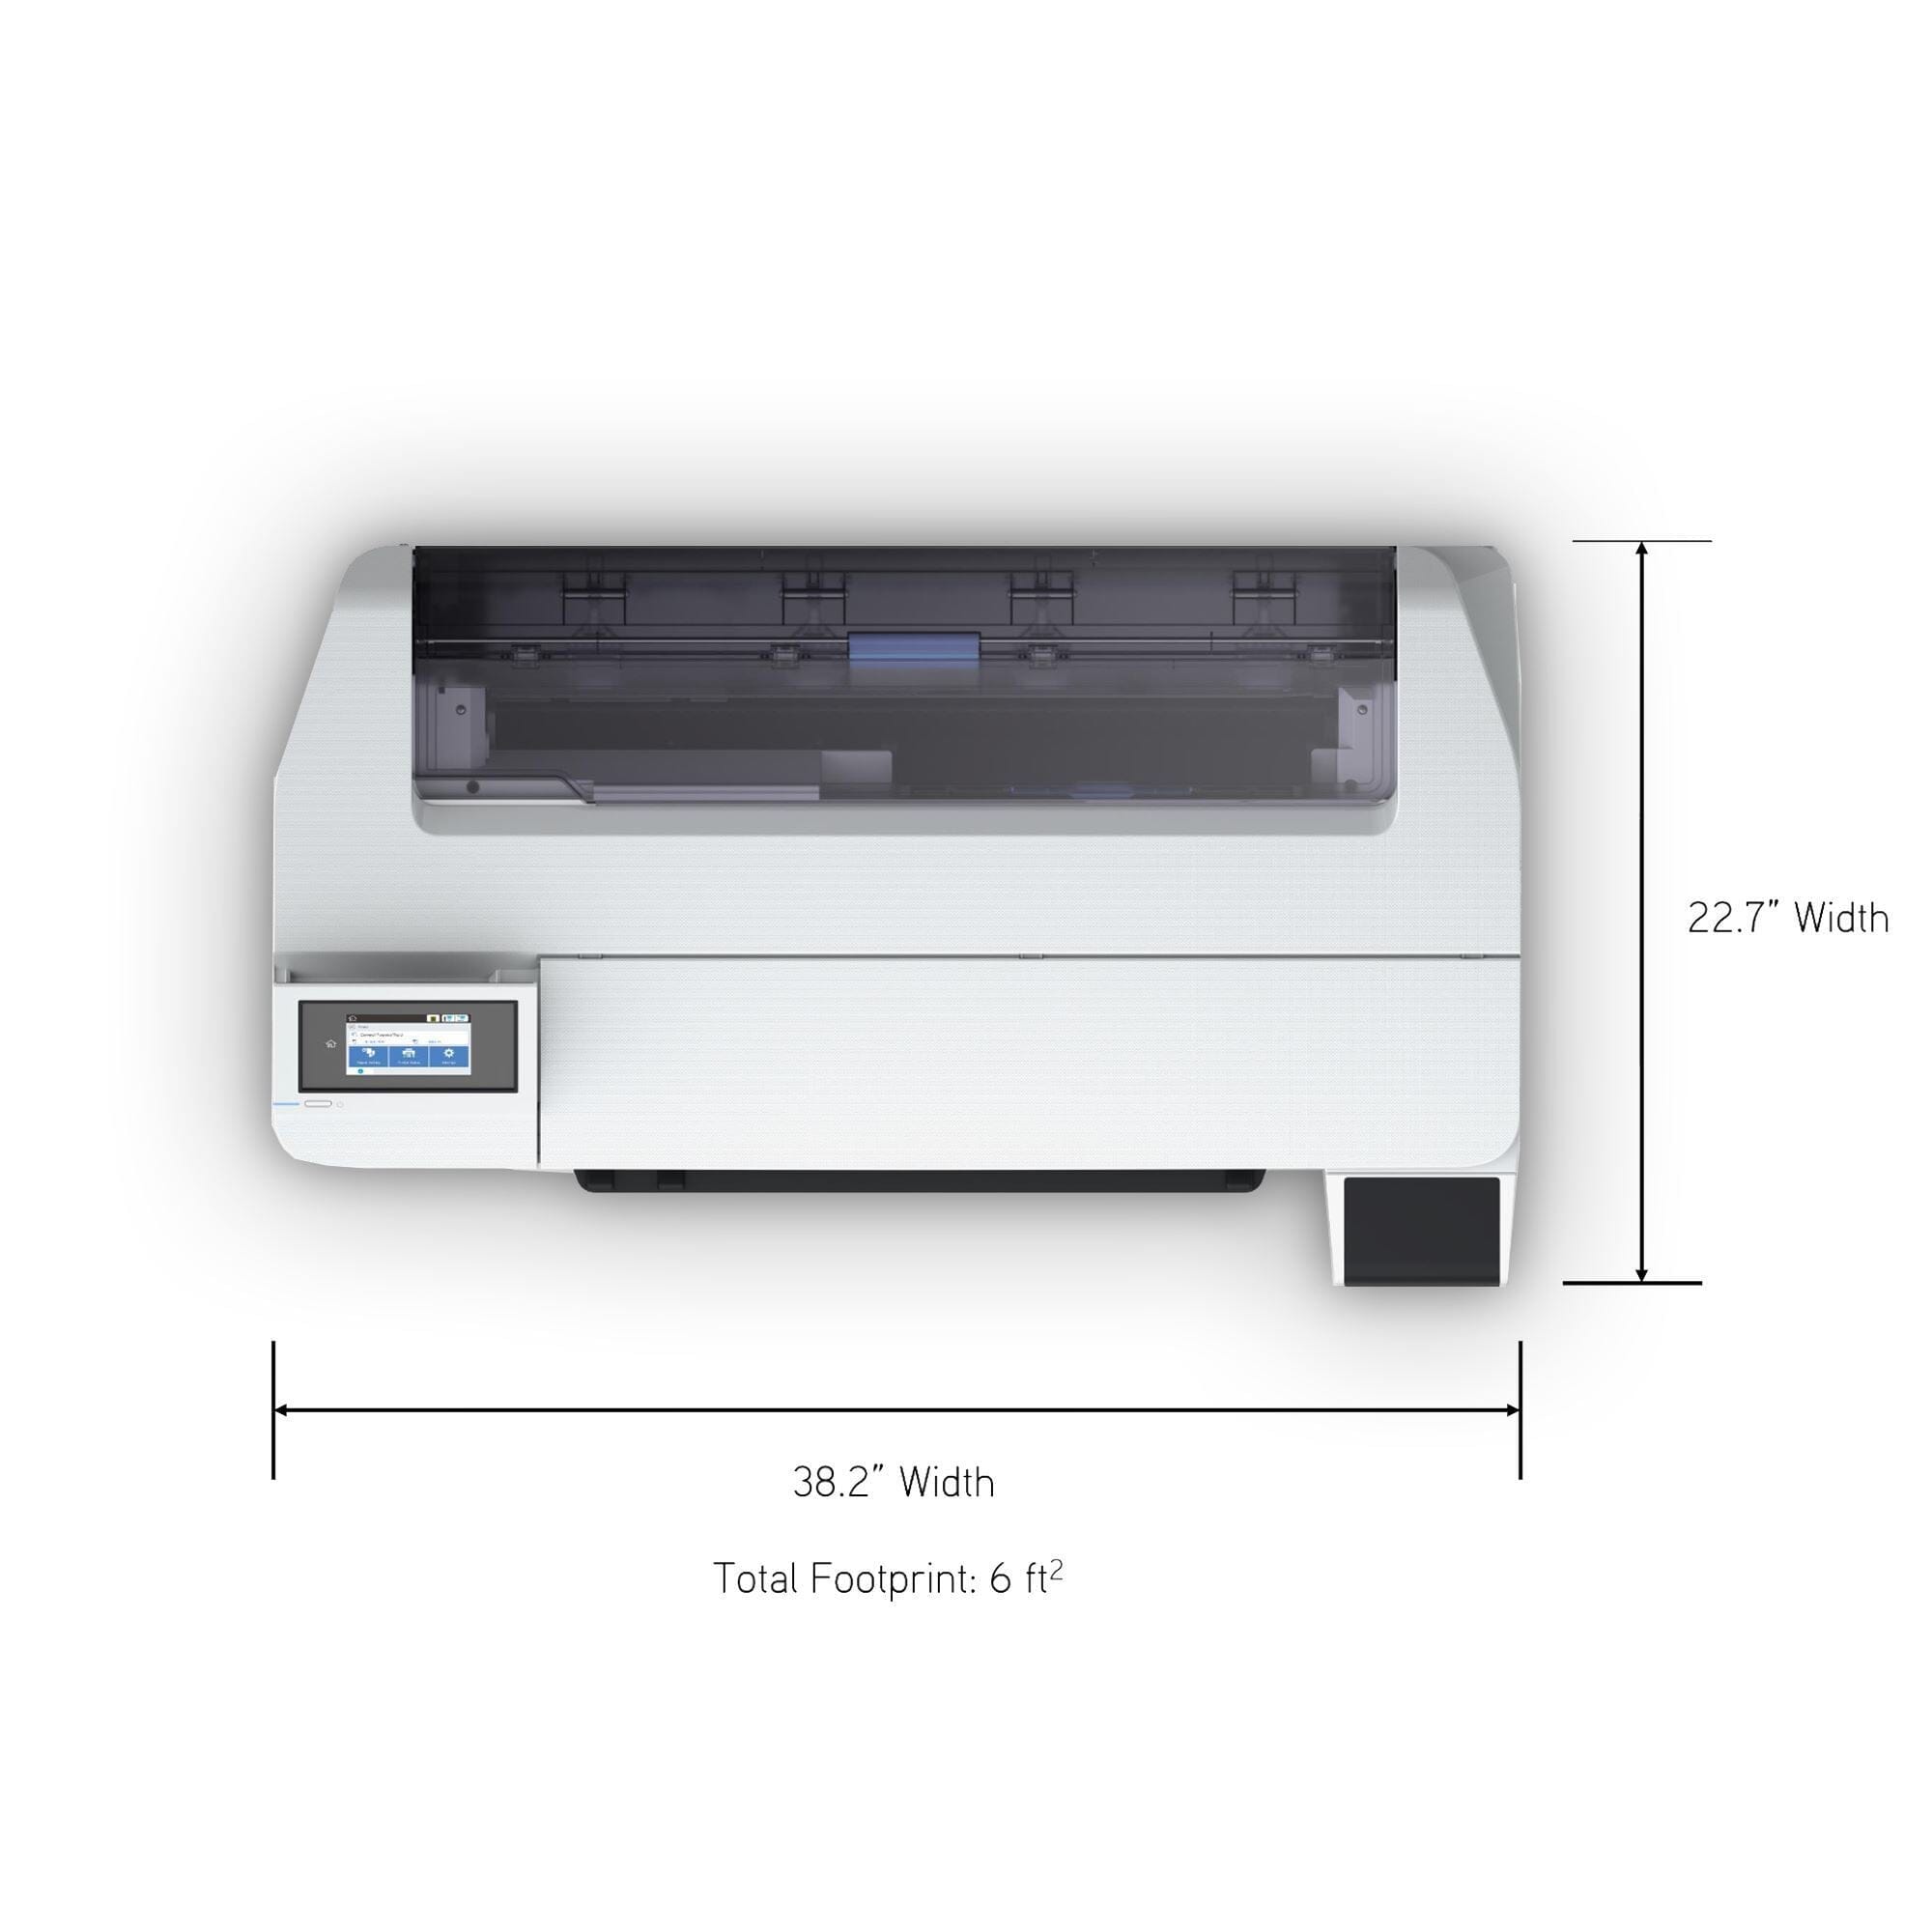 Epson SureColor PRO F570 Desktop 24 Dye Sublimation Paper Printer Bundle